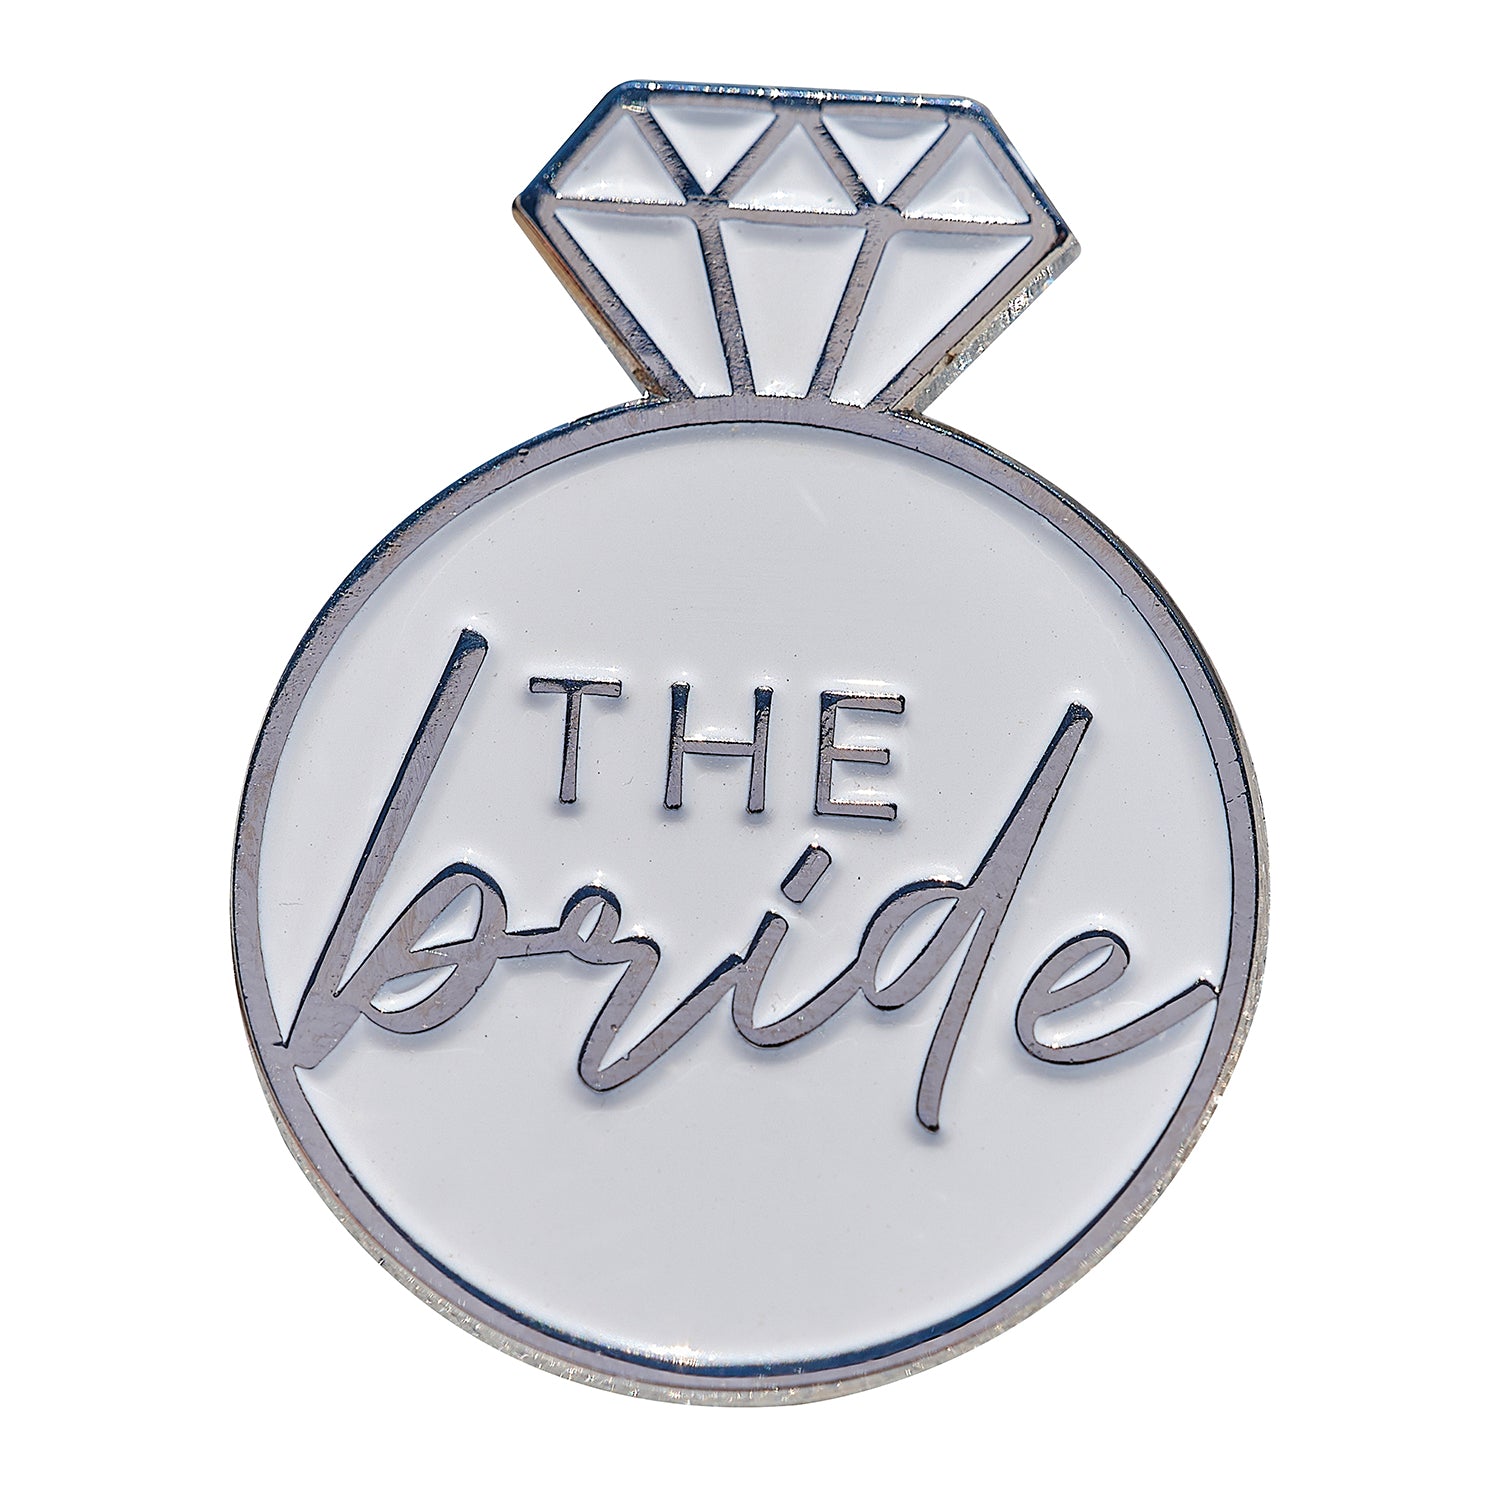 Bride brooch "The Bride"